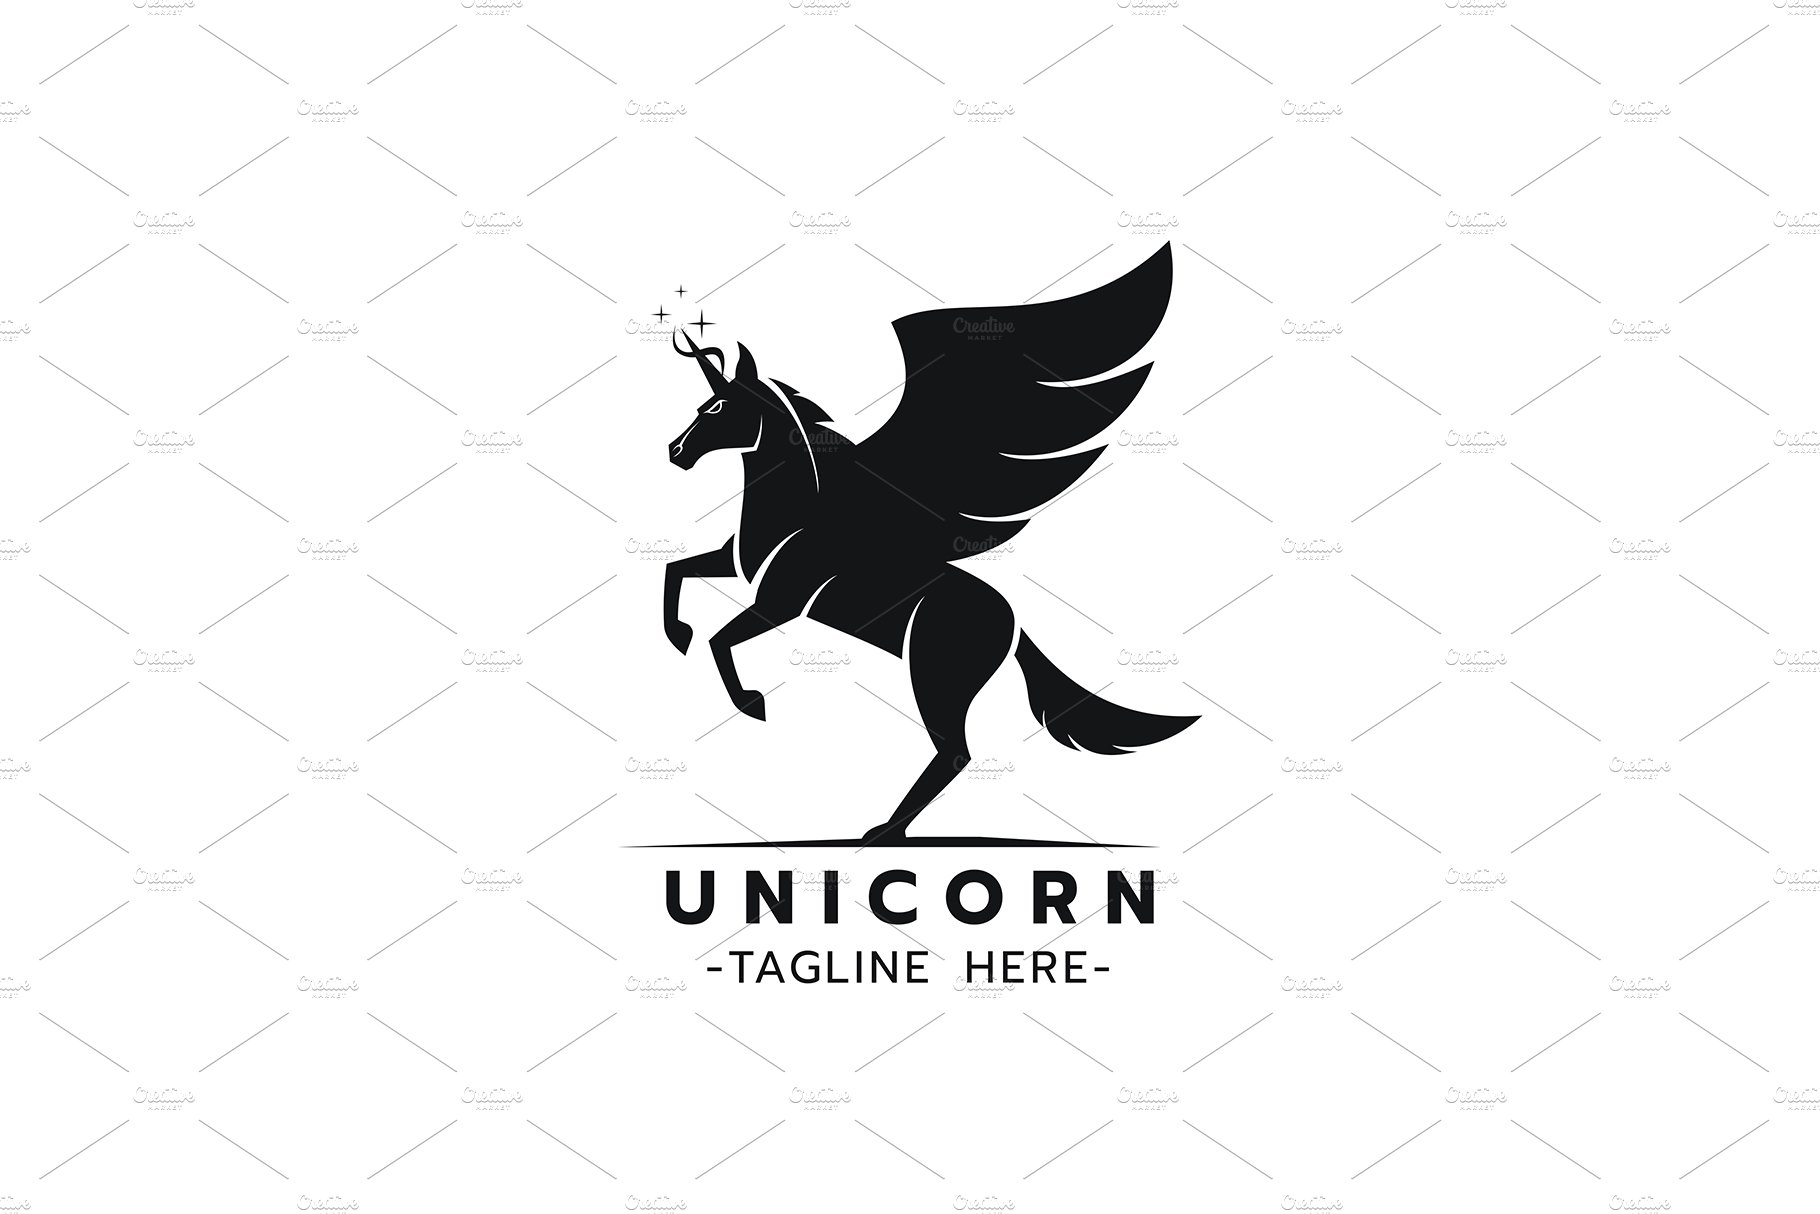 Stylized image of Unicorn logo cover image.